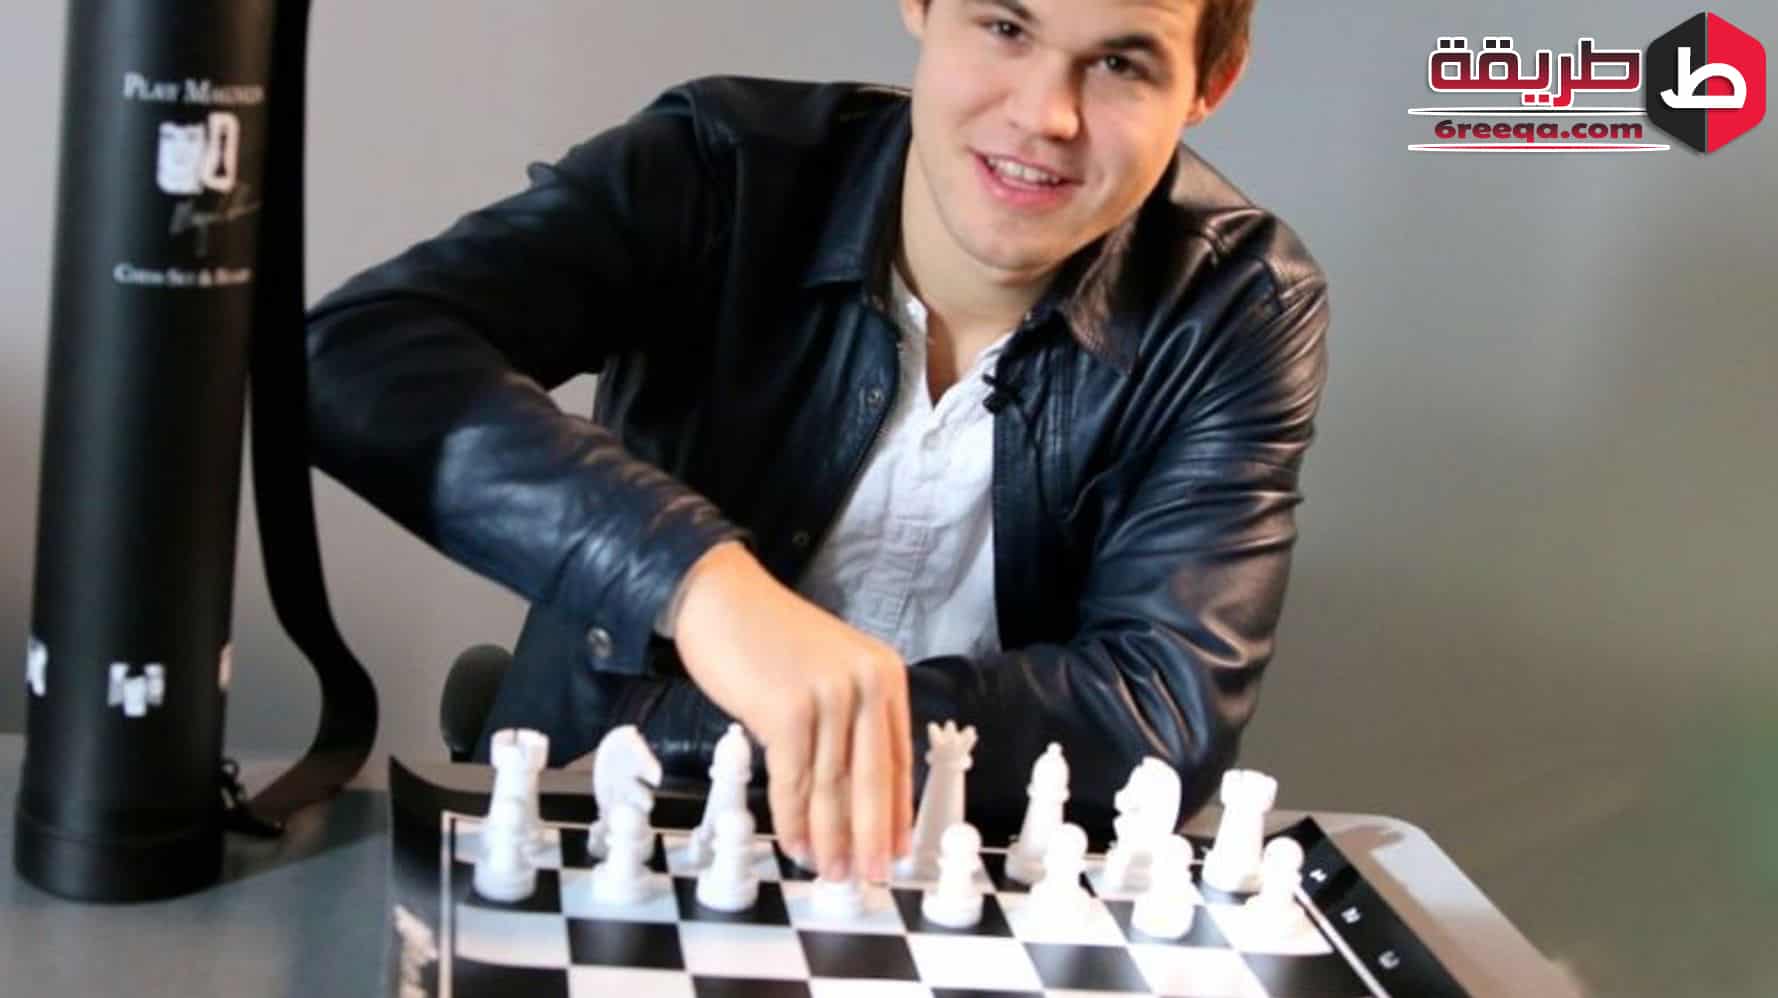 Play Magnus Chess